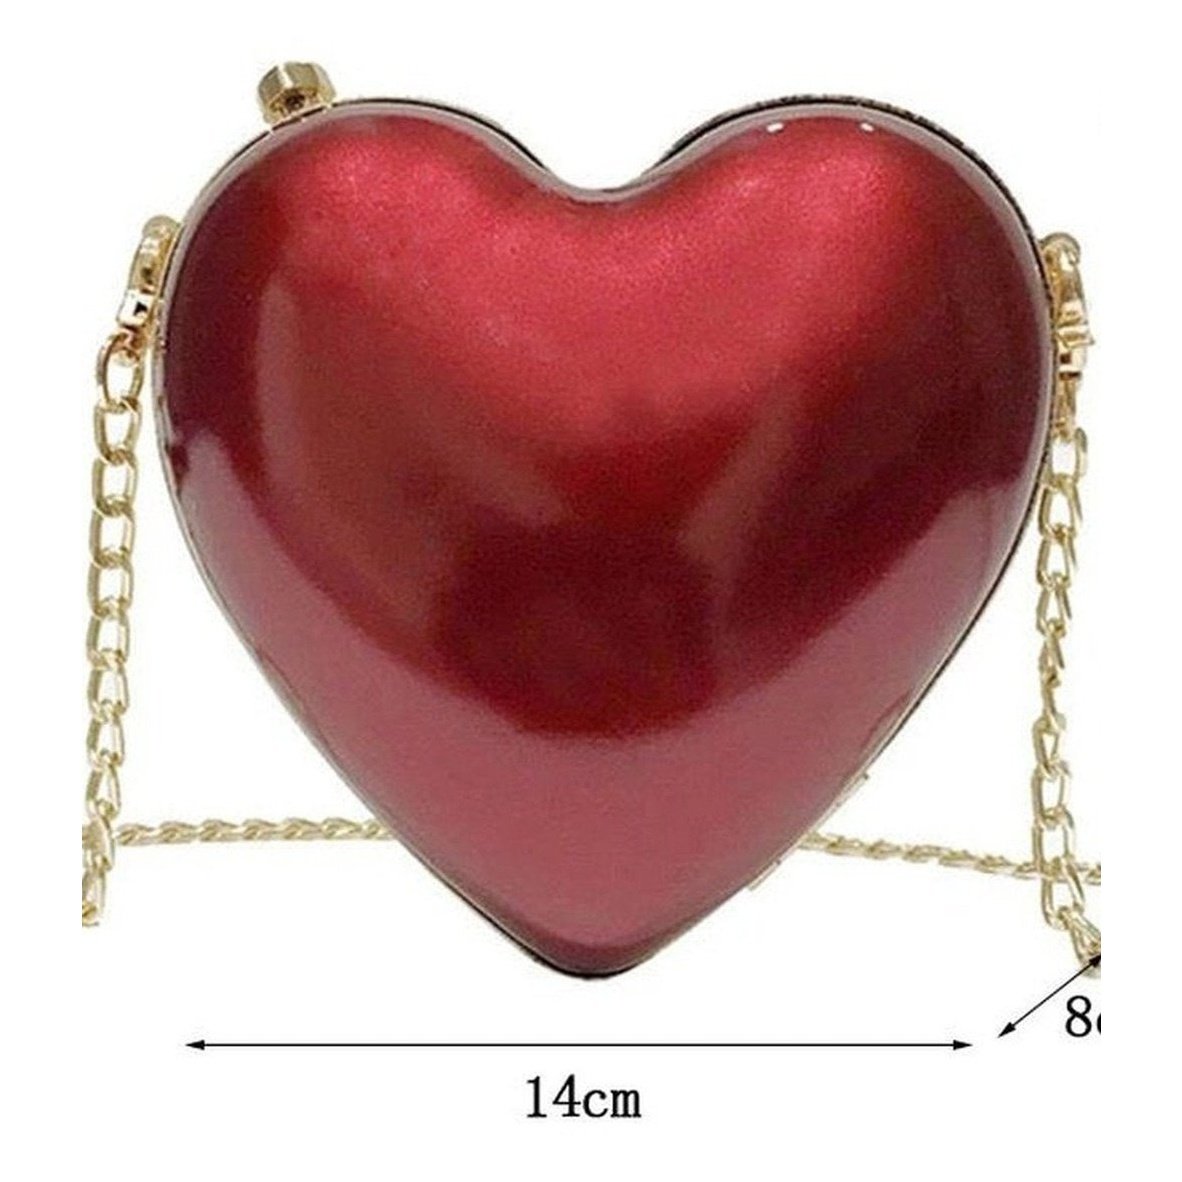 Heart clutch bag